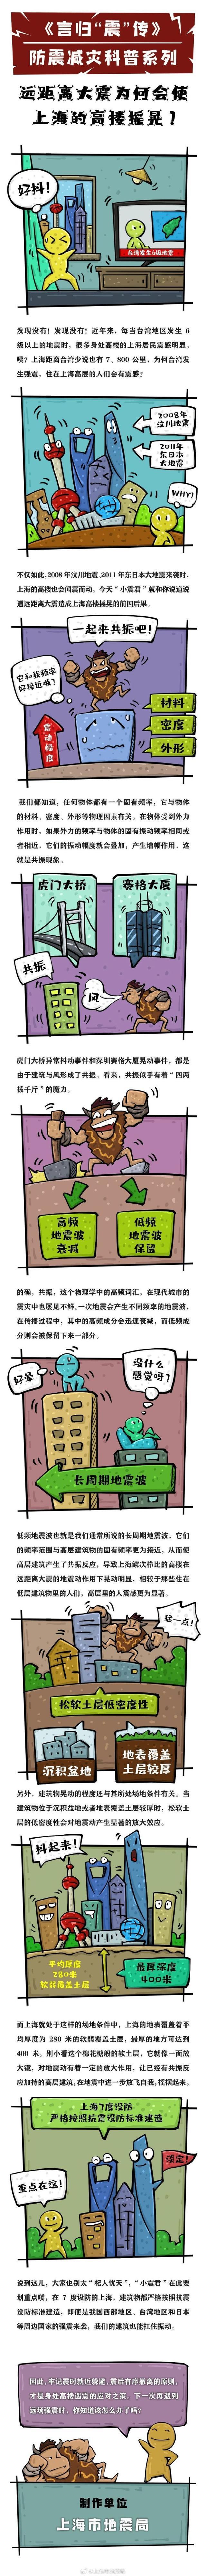 台湾地区发生中强地震，上海高层建筑市民有震感 台湾强震会影响上海高层建筑吗